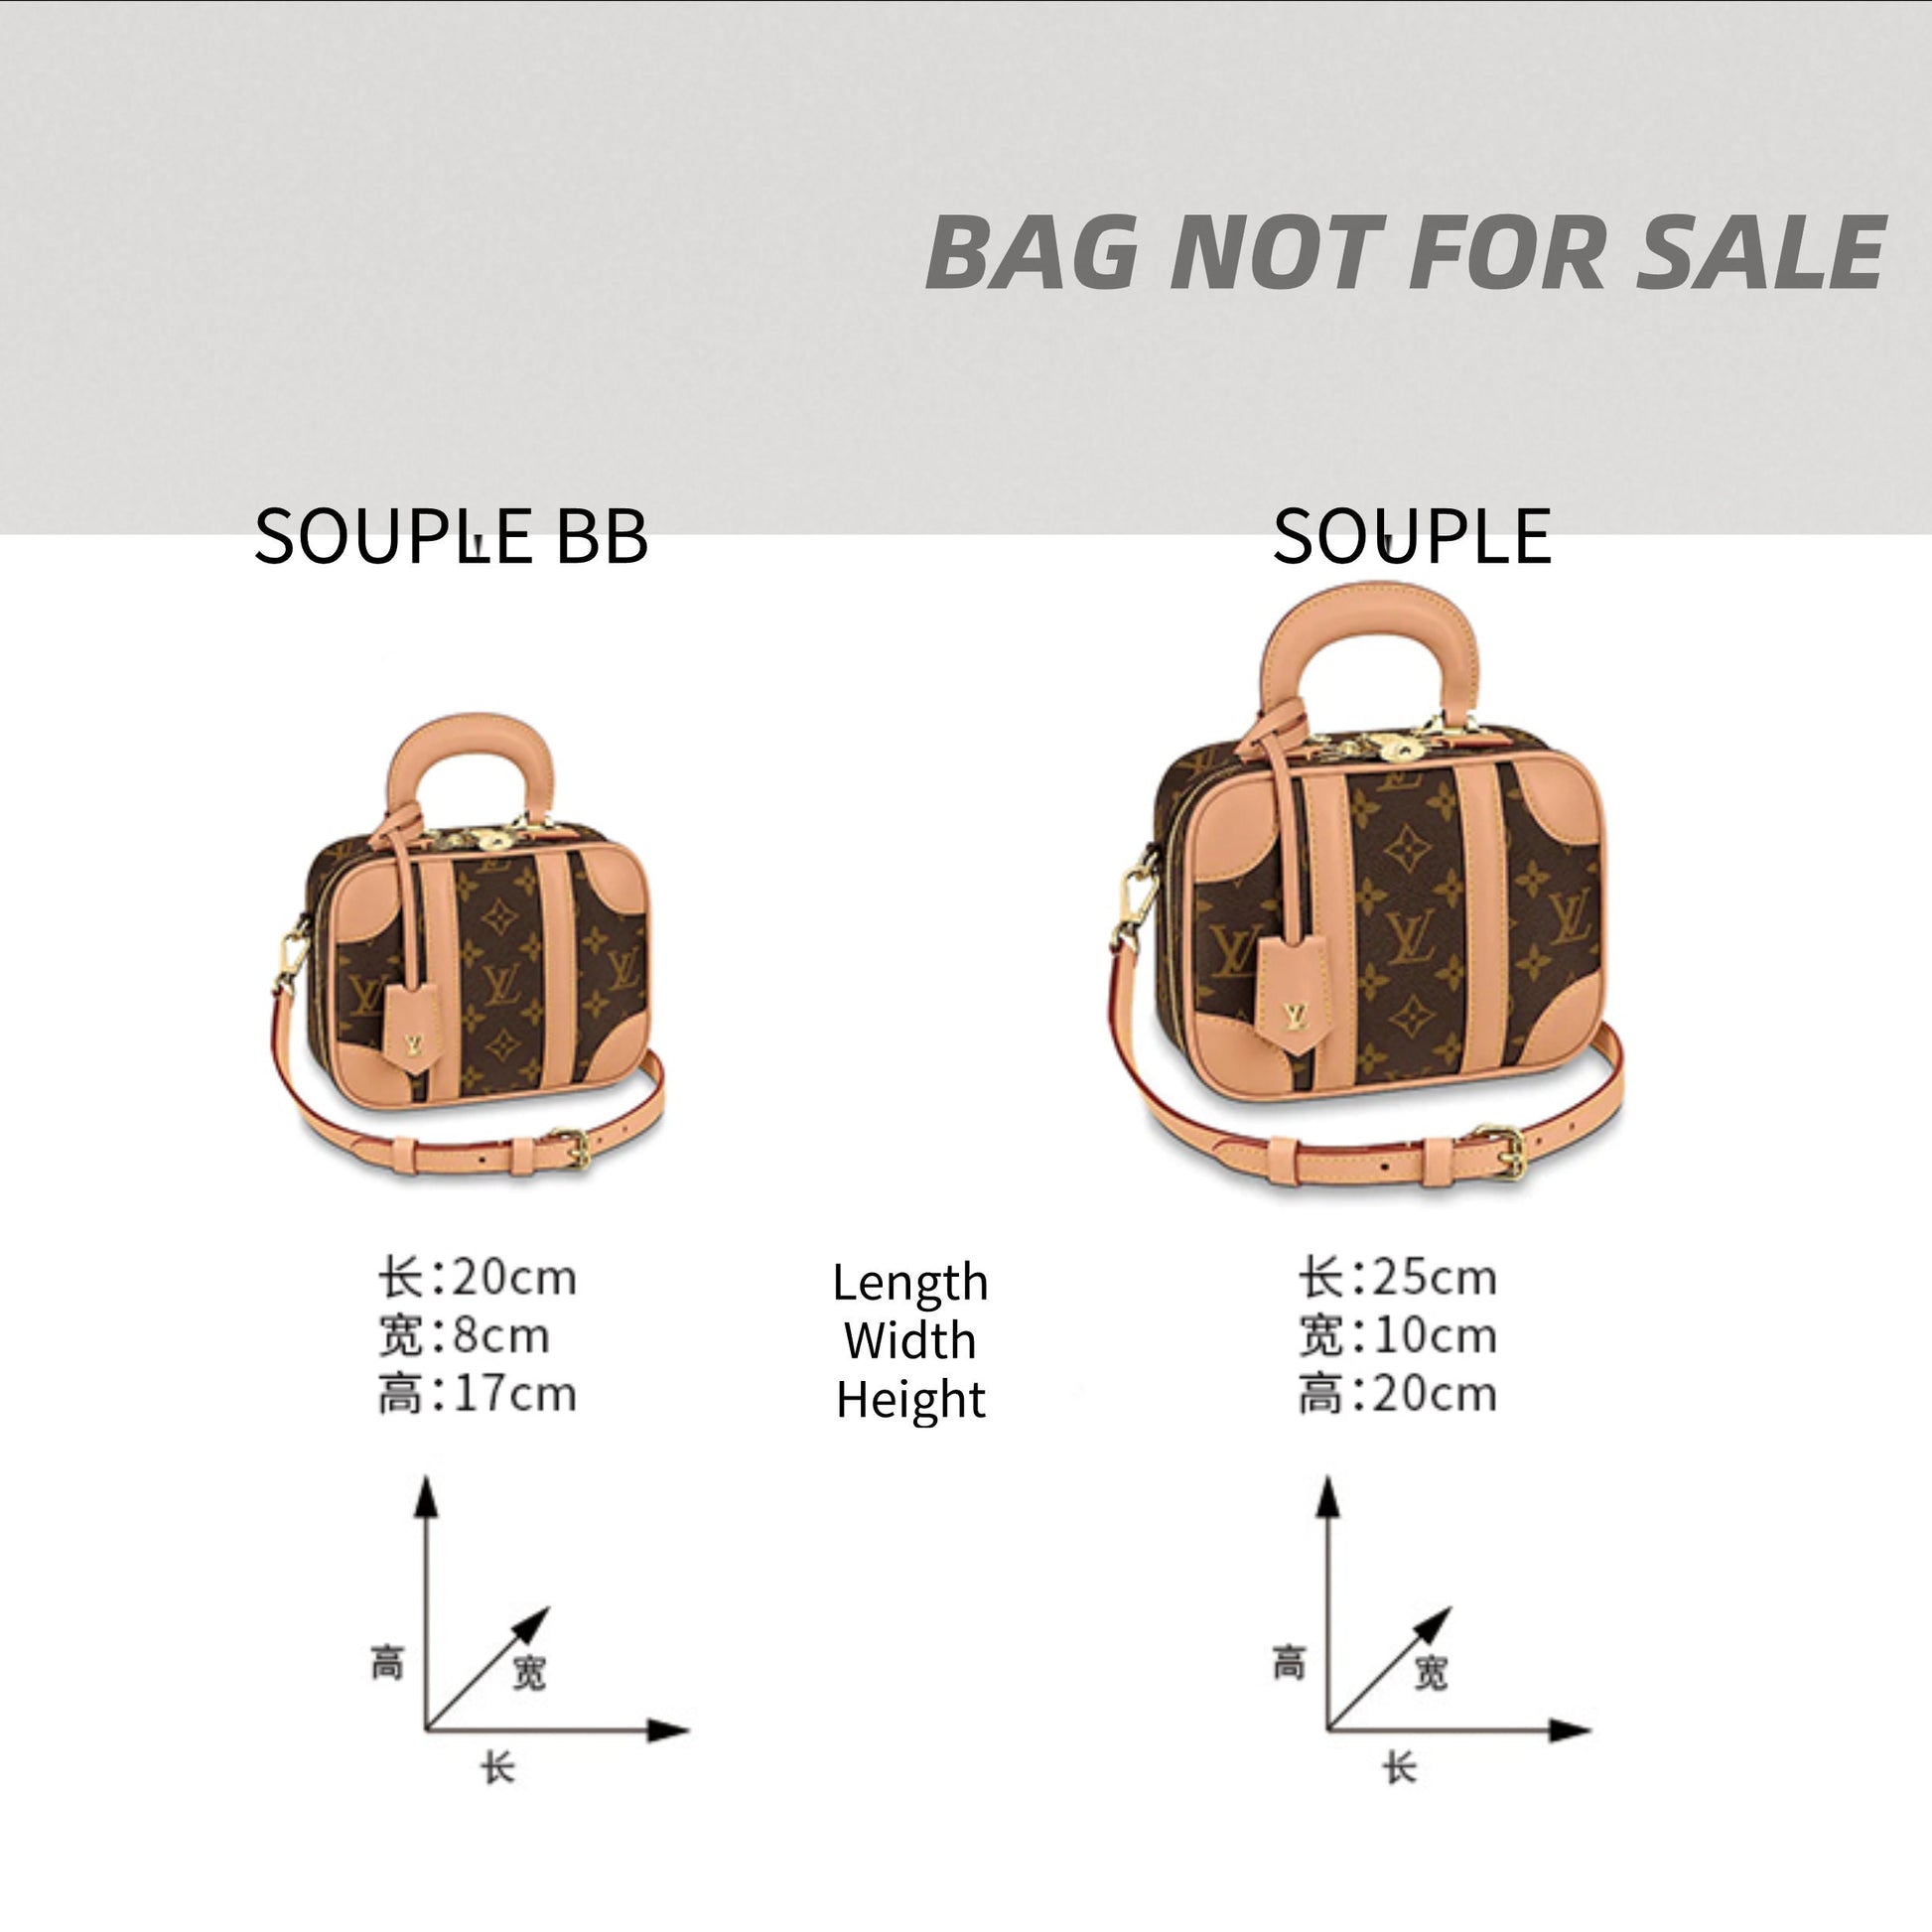 Valisette Souple Bag Organizer / Valisette Souple BB Insert / 